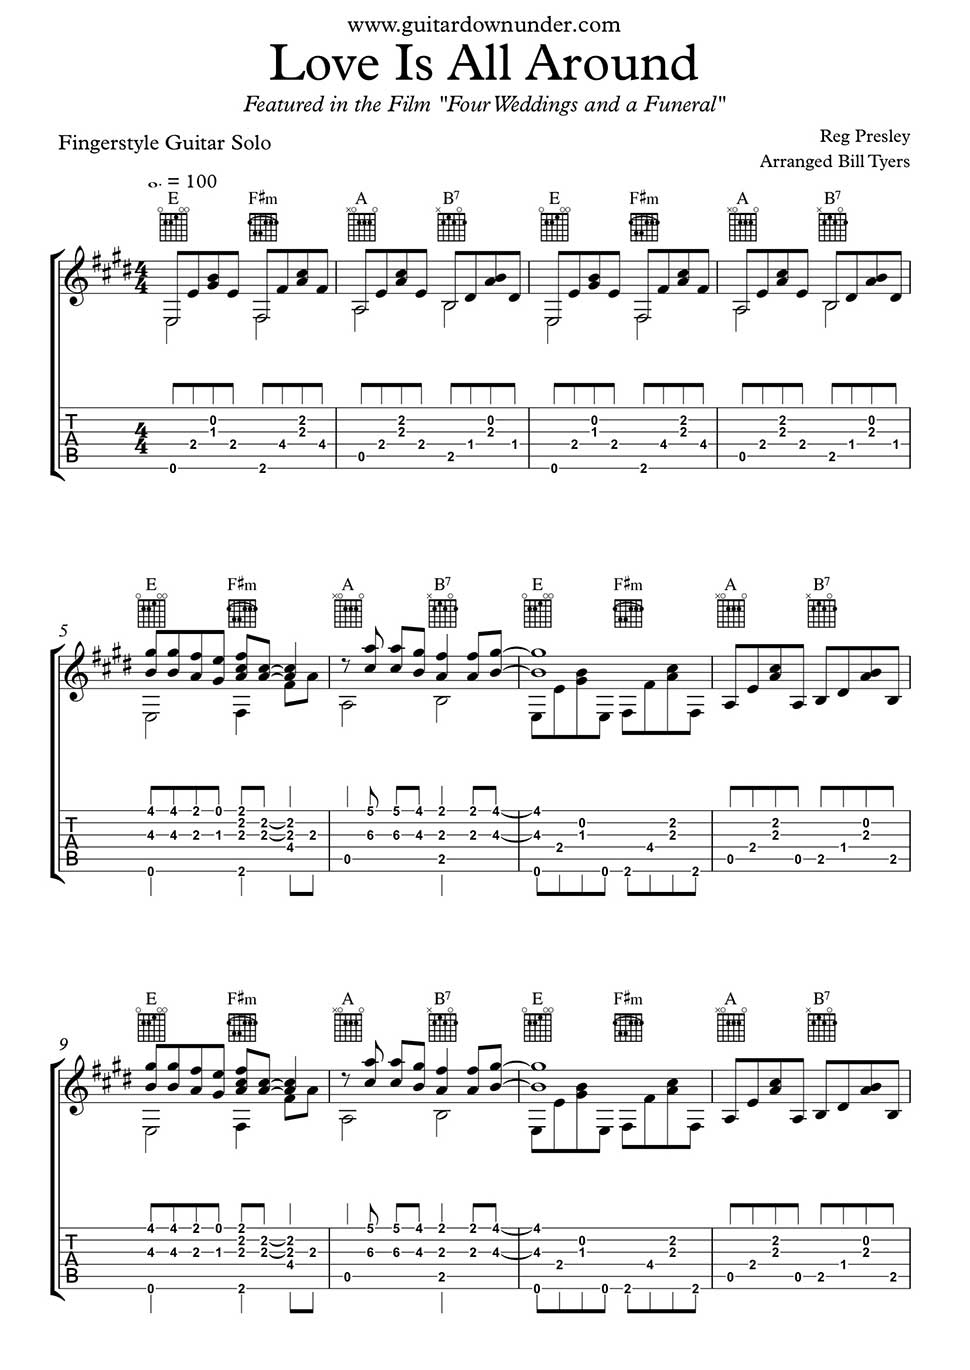 wonderful tonight fingerstyle tab pdf ukulele